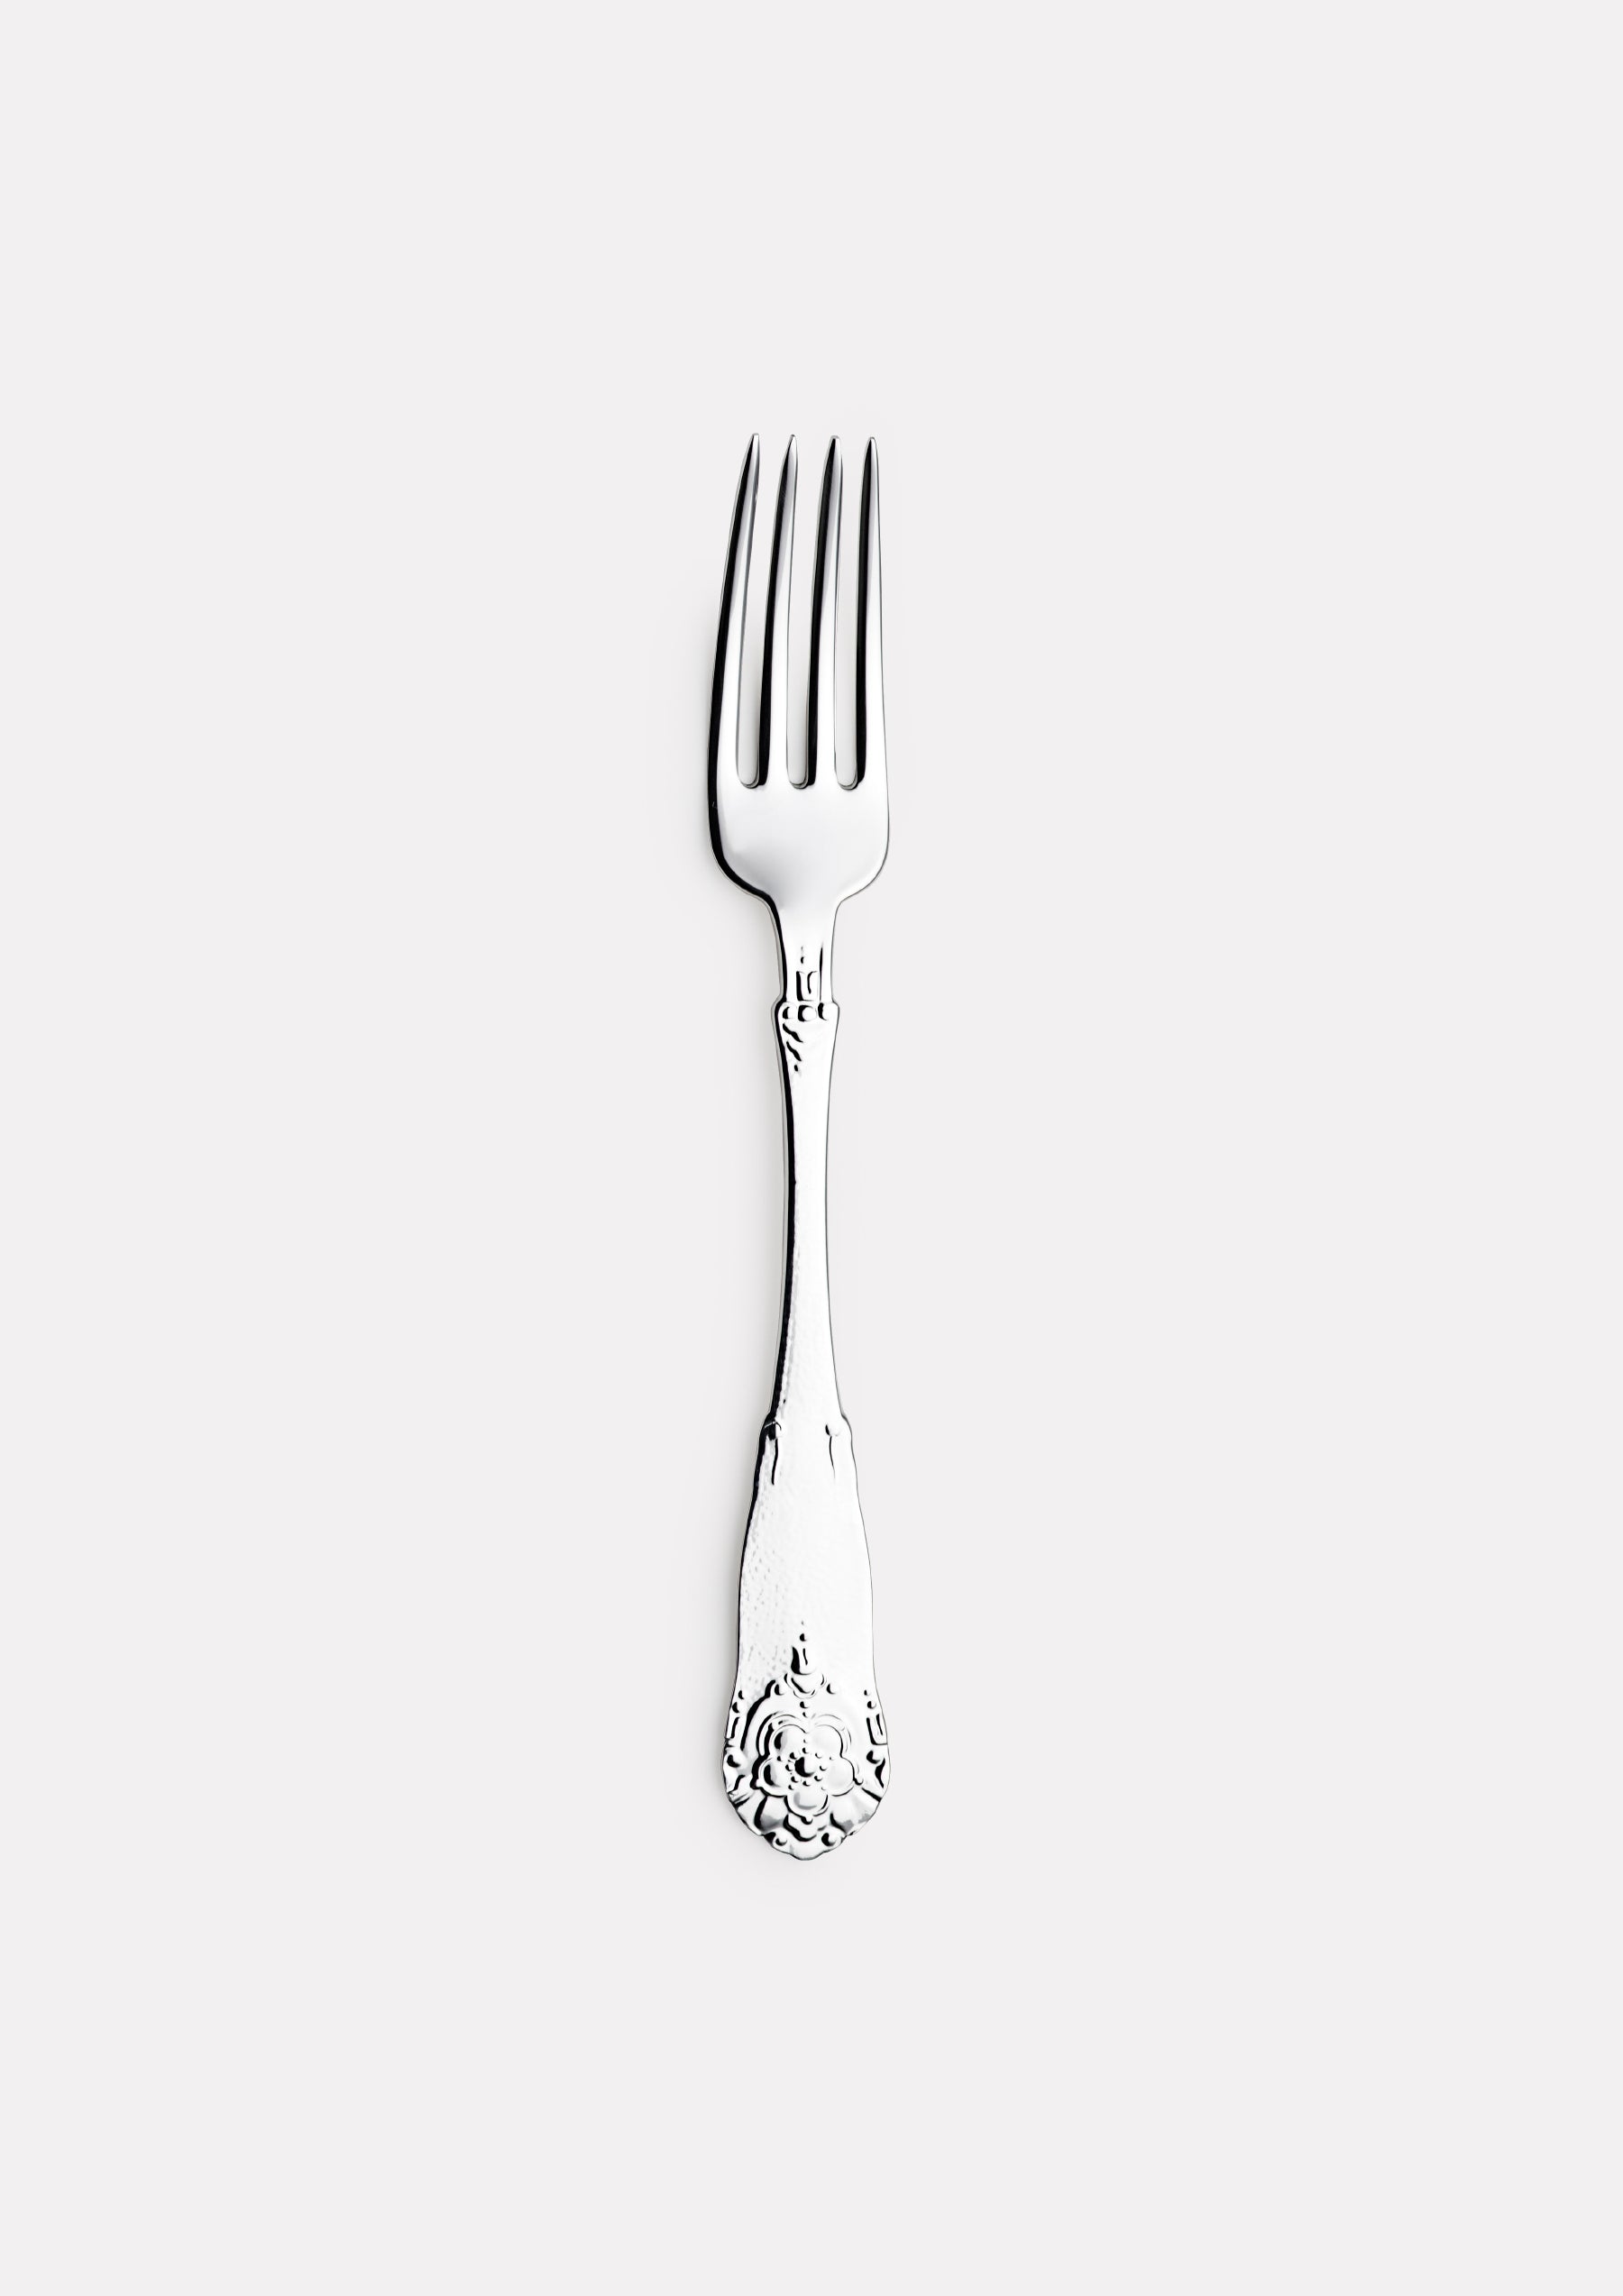 Hardanger children's fork